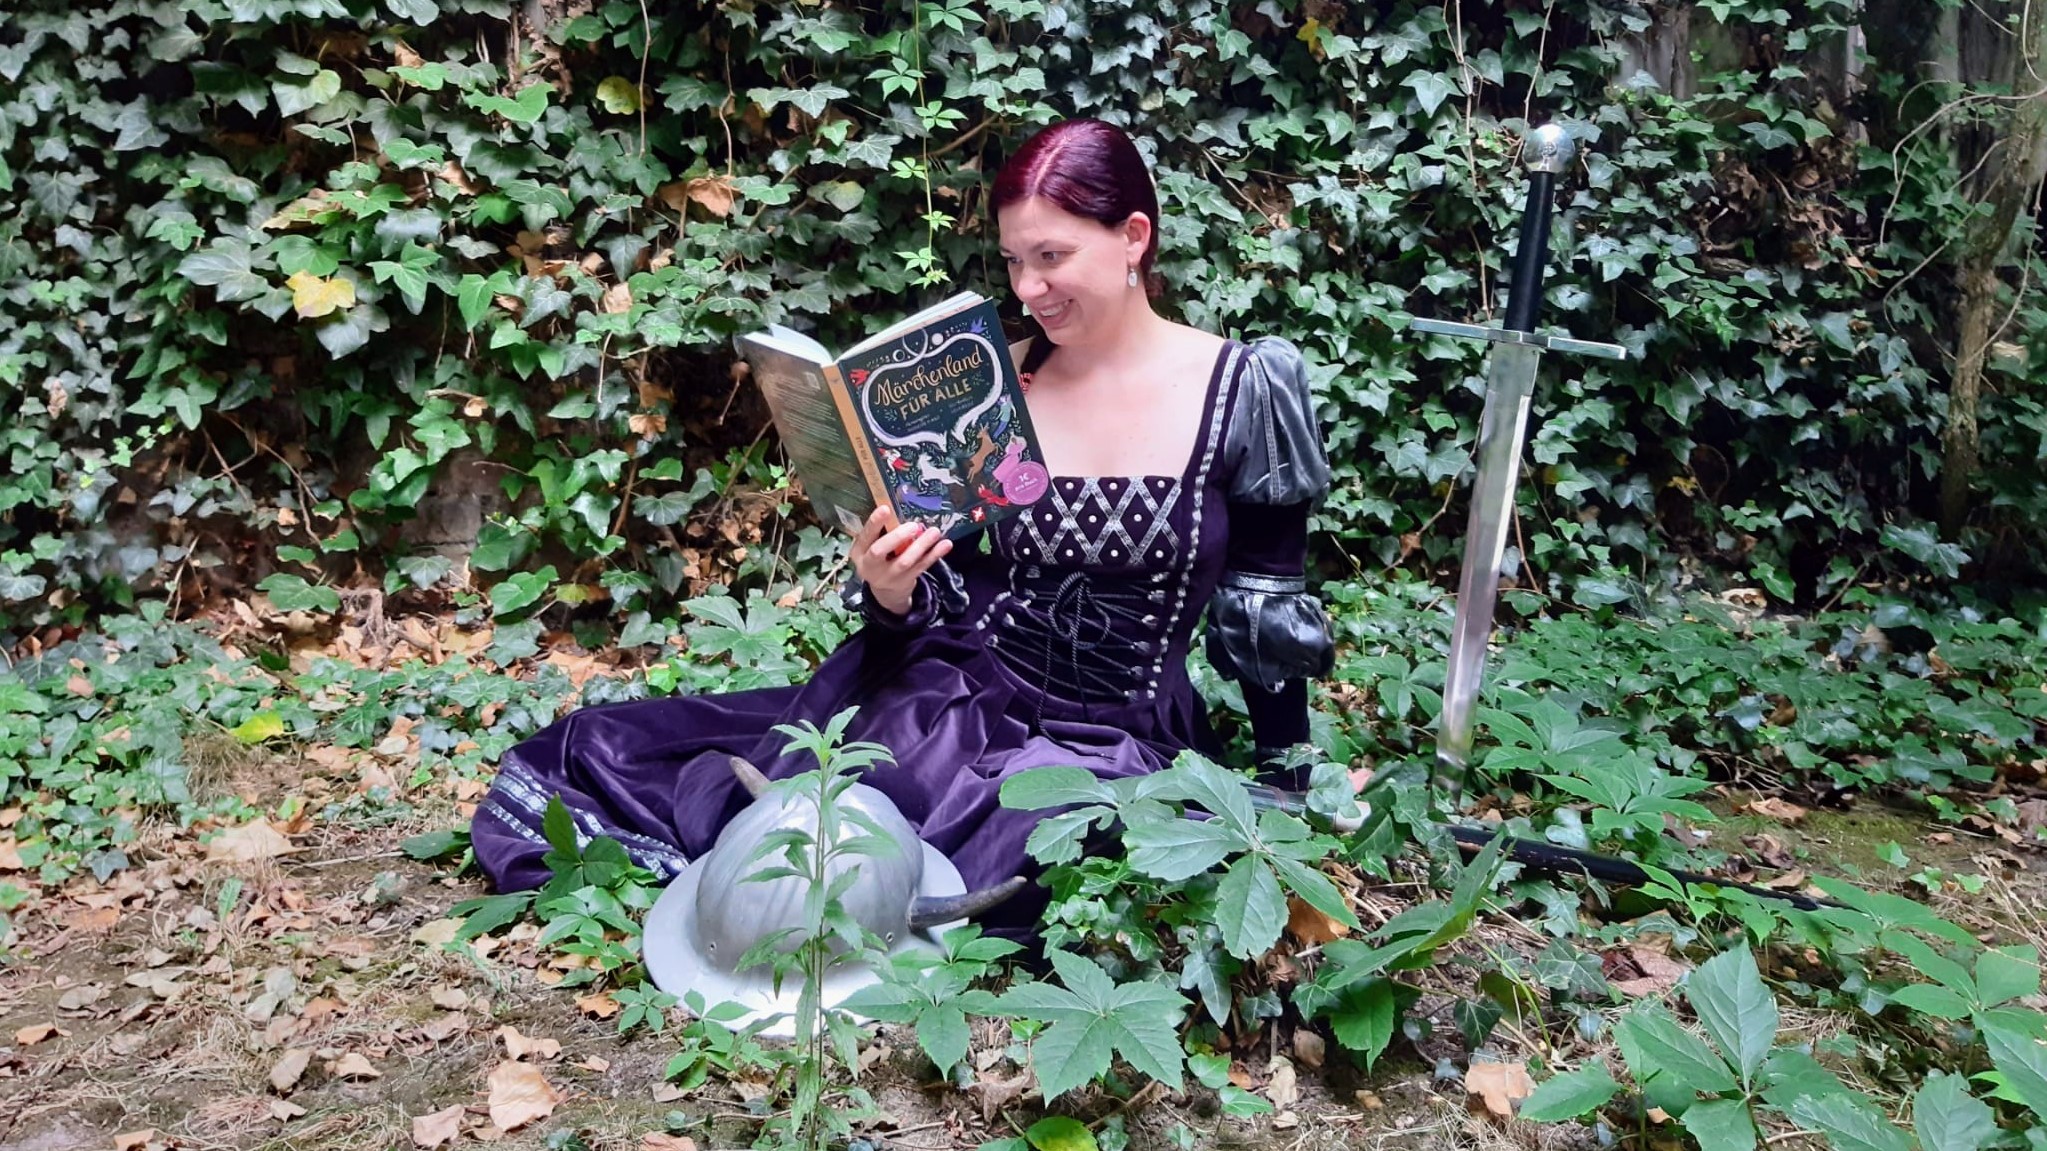 Frau in Märchenkleid sitzt im Wald neben einem Schwert und liest "Märchenland für Alle".